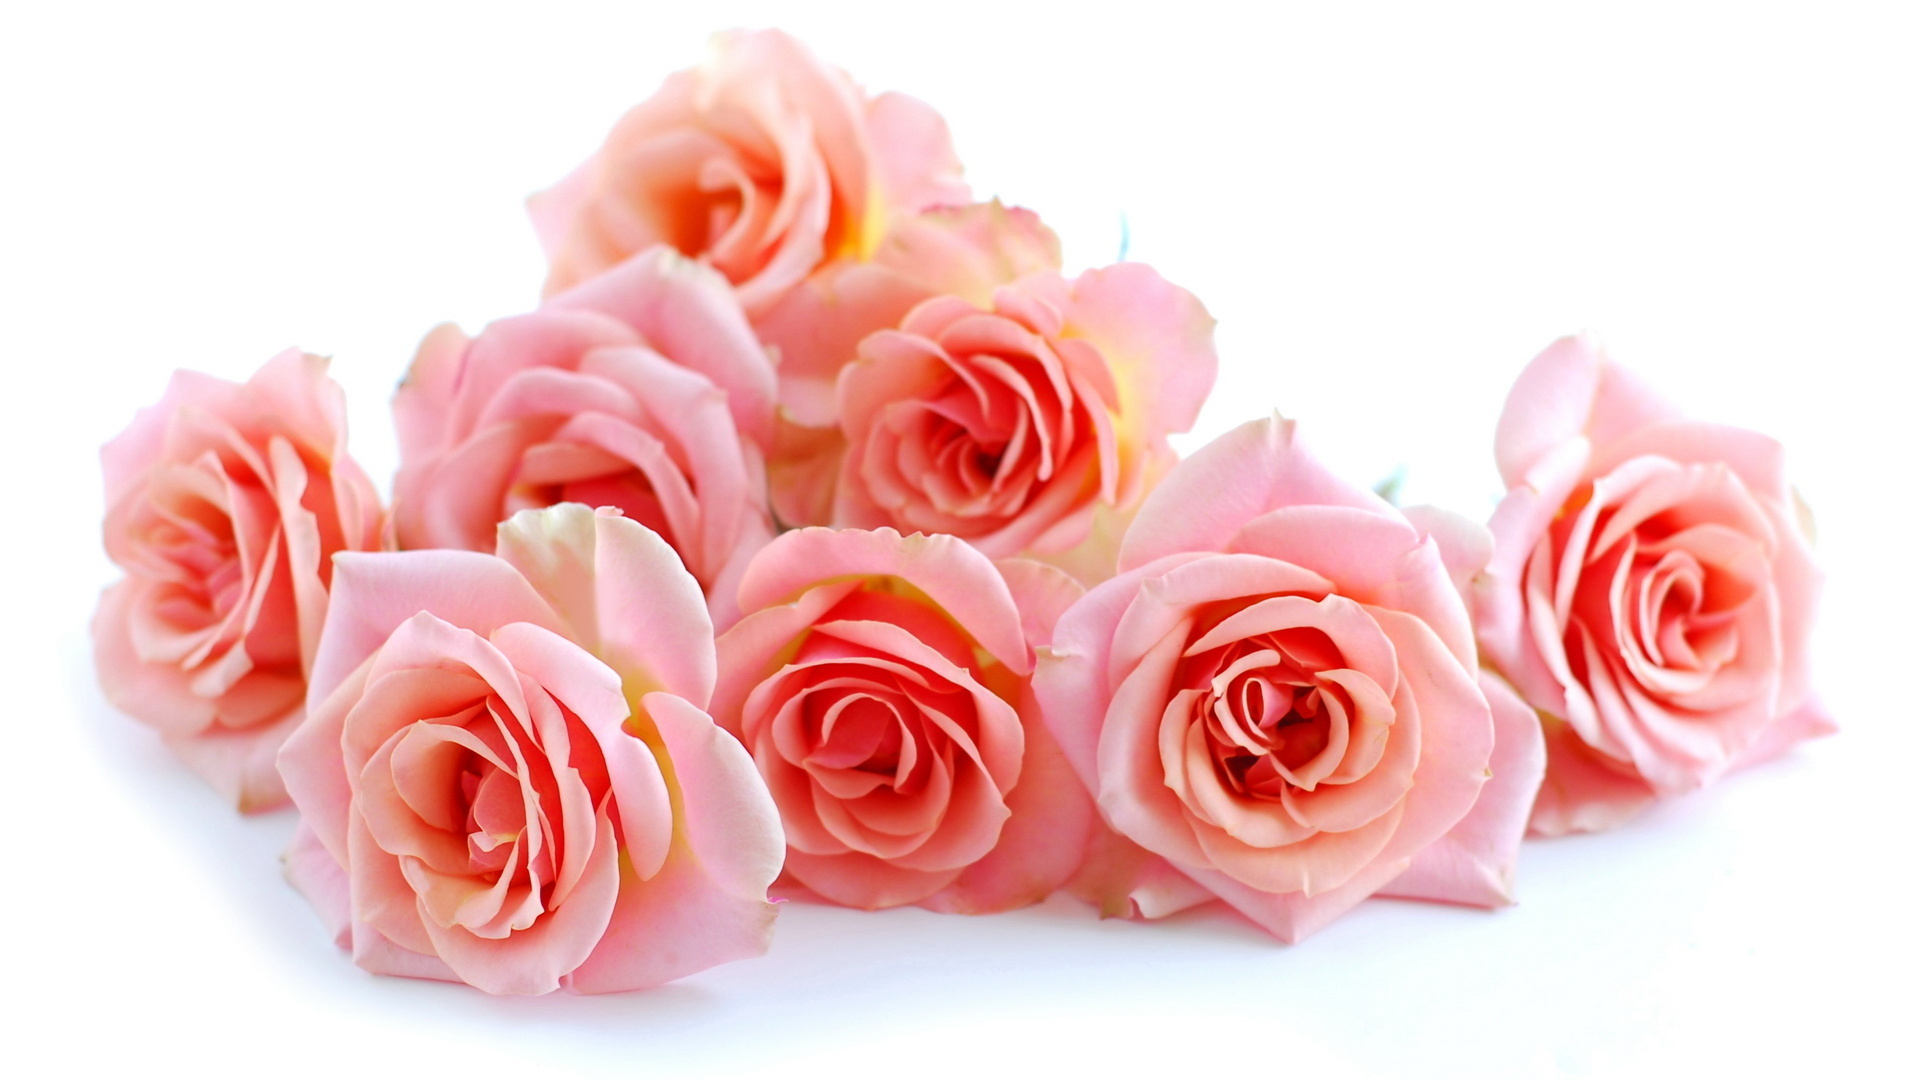 Розовые розы на белом фоне